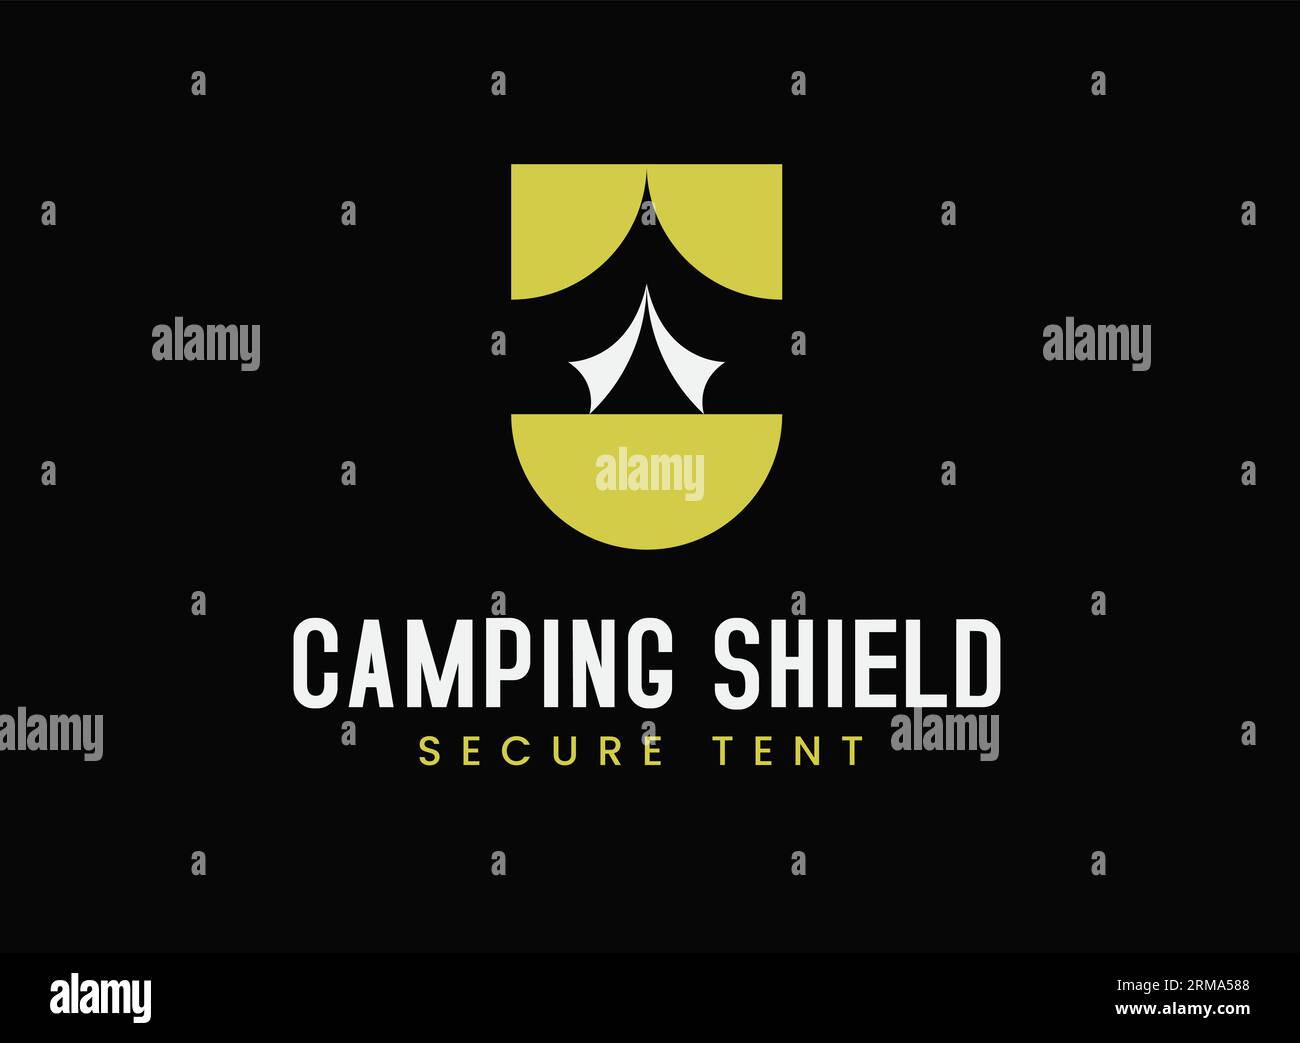 Wir präsentieren das ultimative Logo des Campingschilds mit sicherem Zeltlogo, perfekt für jede Campingausrüstung oder Camping. Das nahtlose Emblem kann von Unternehmen verwendet werden Stock Vektor